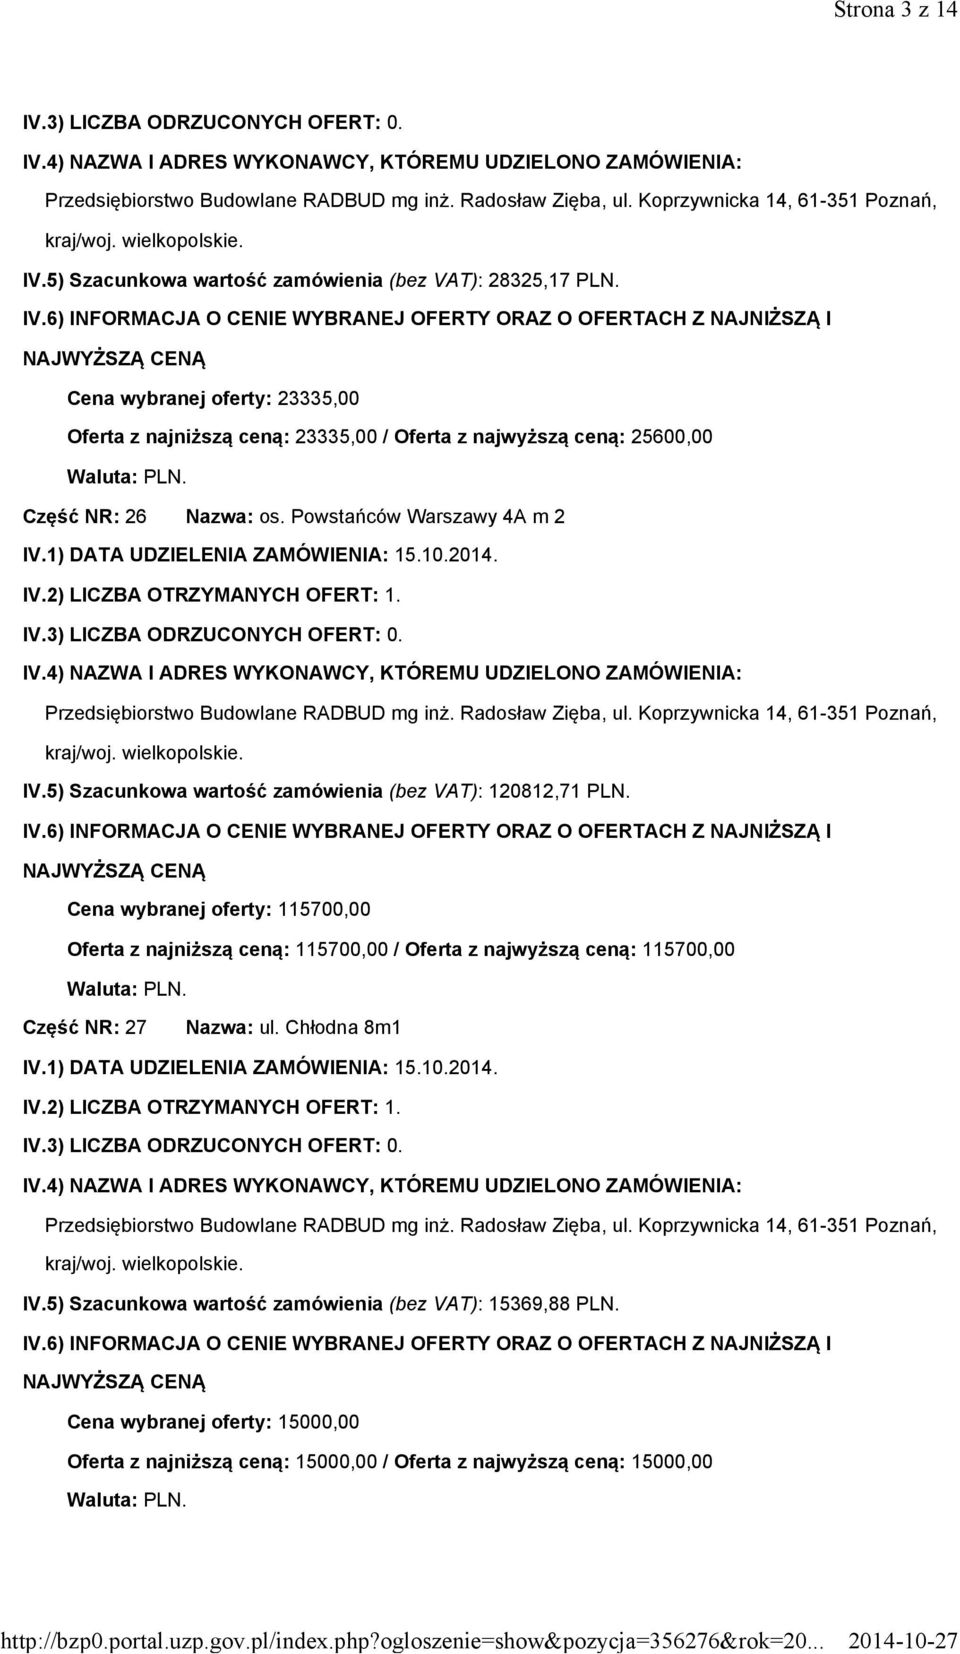 Radosław Zięba, ul. Koprzywnicka 14, 61-351 Poznań, kraj/woj. IV.5) Szacunkowa wartość zamówienia (bez VAT): 120812,71 PLN.